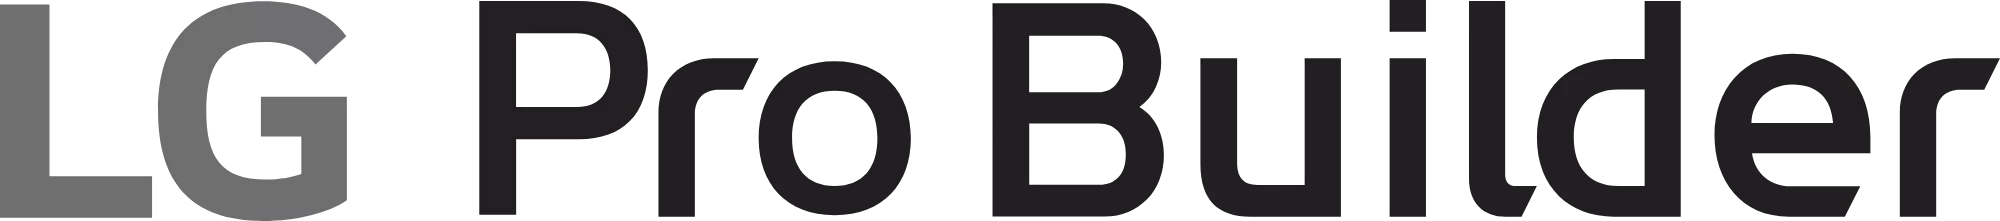 B2C_logo1